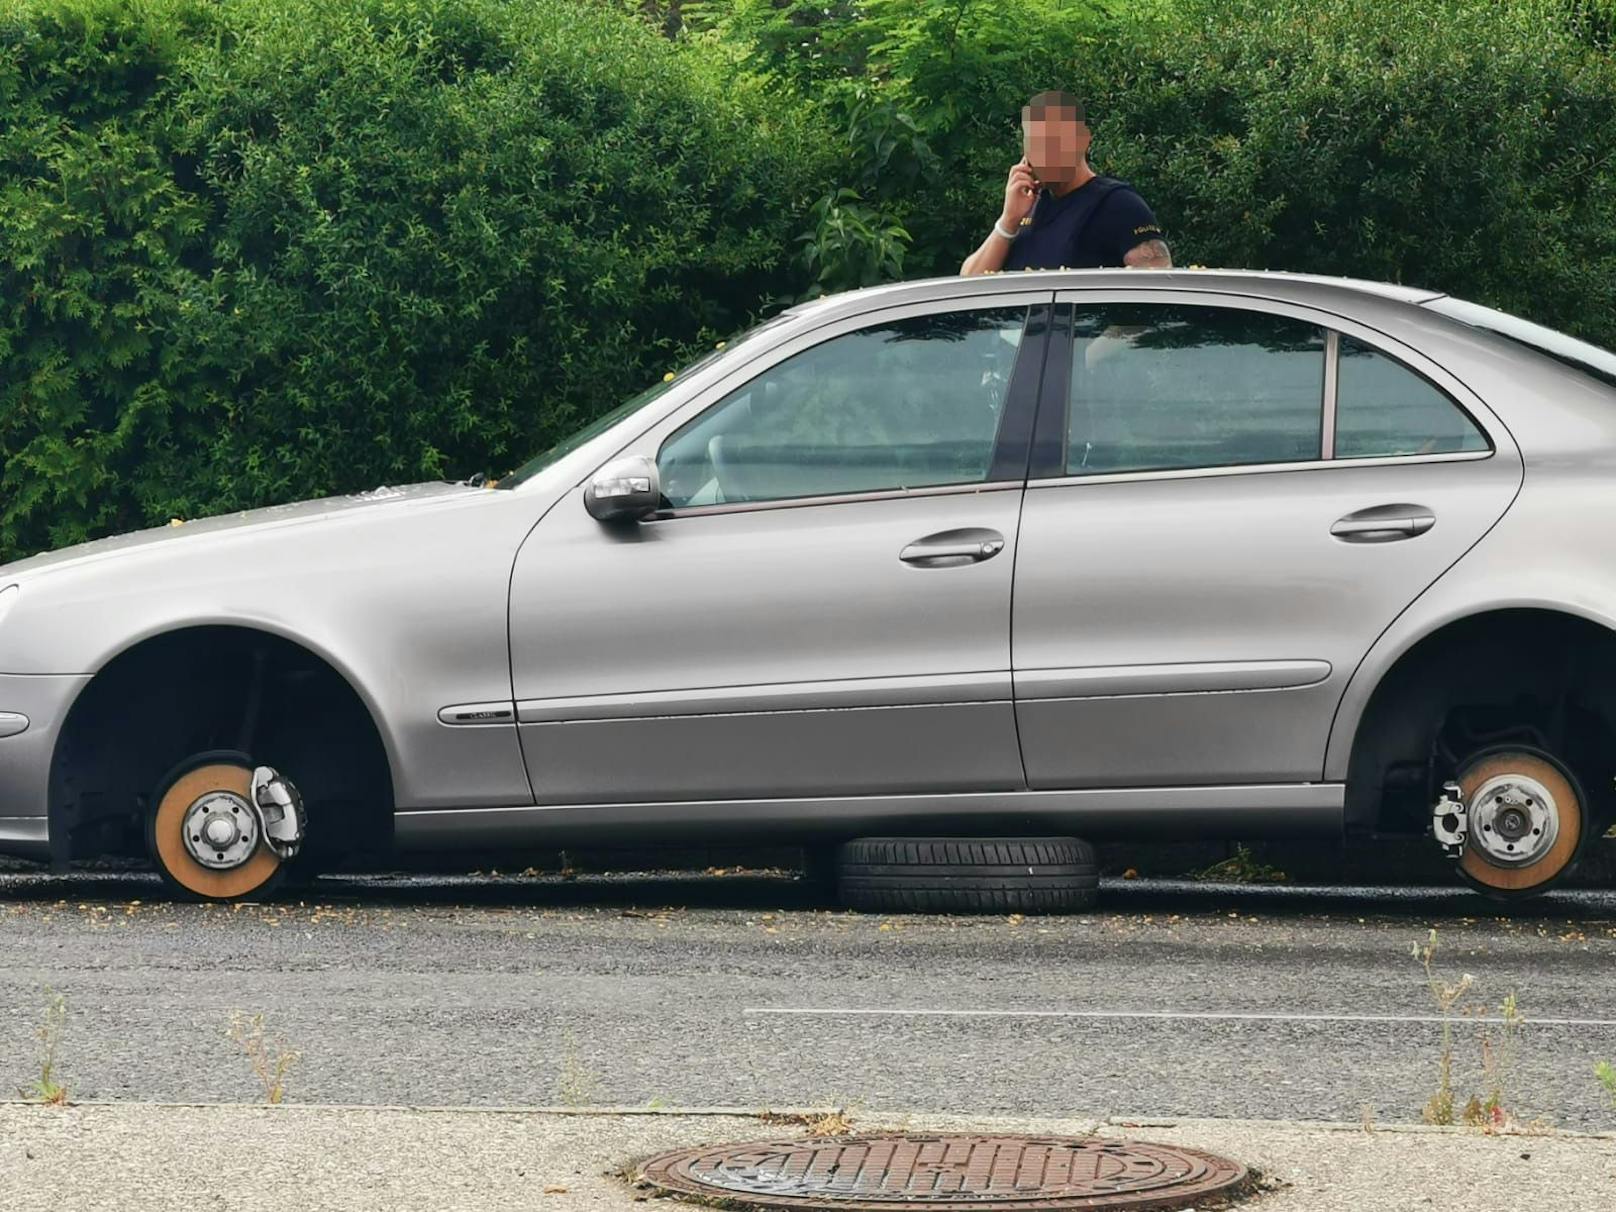 Felgen-Diebe bockten Wiener Auto auf und stahlen Reifen – Leser